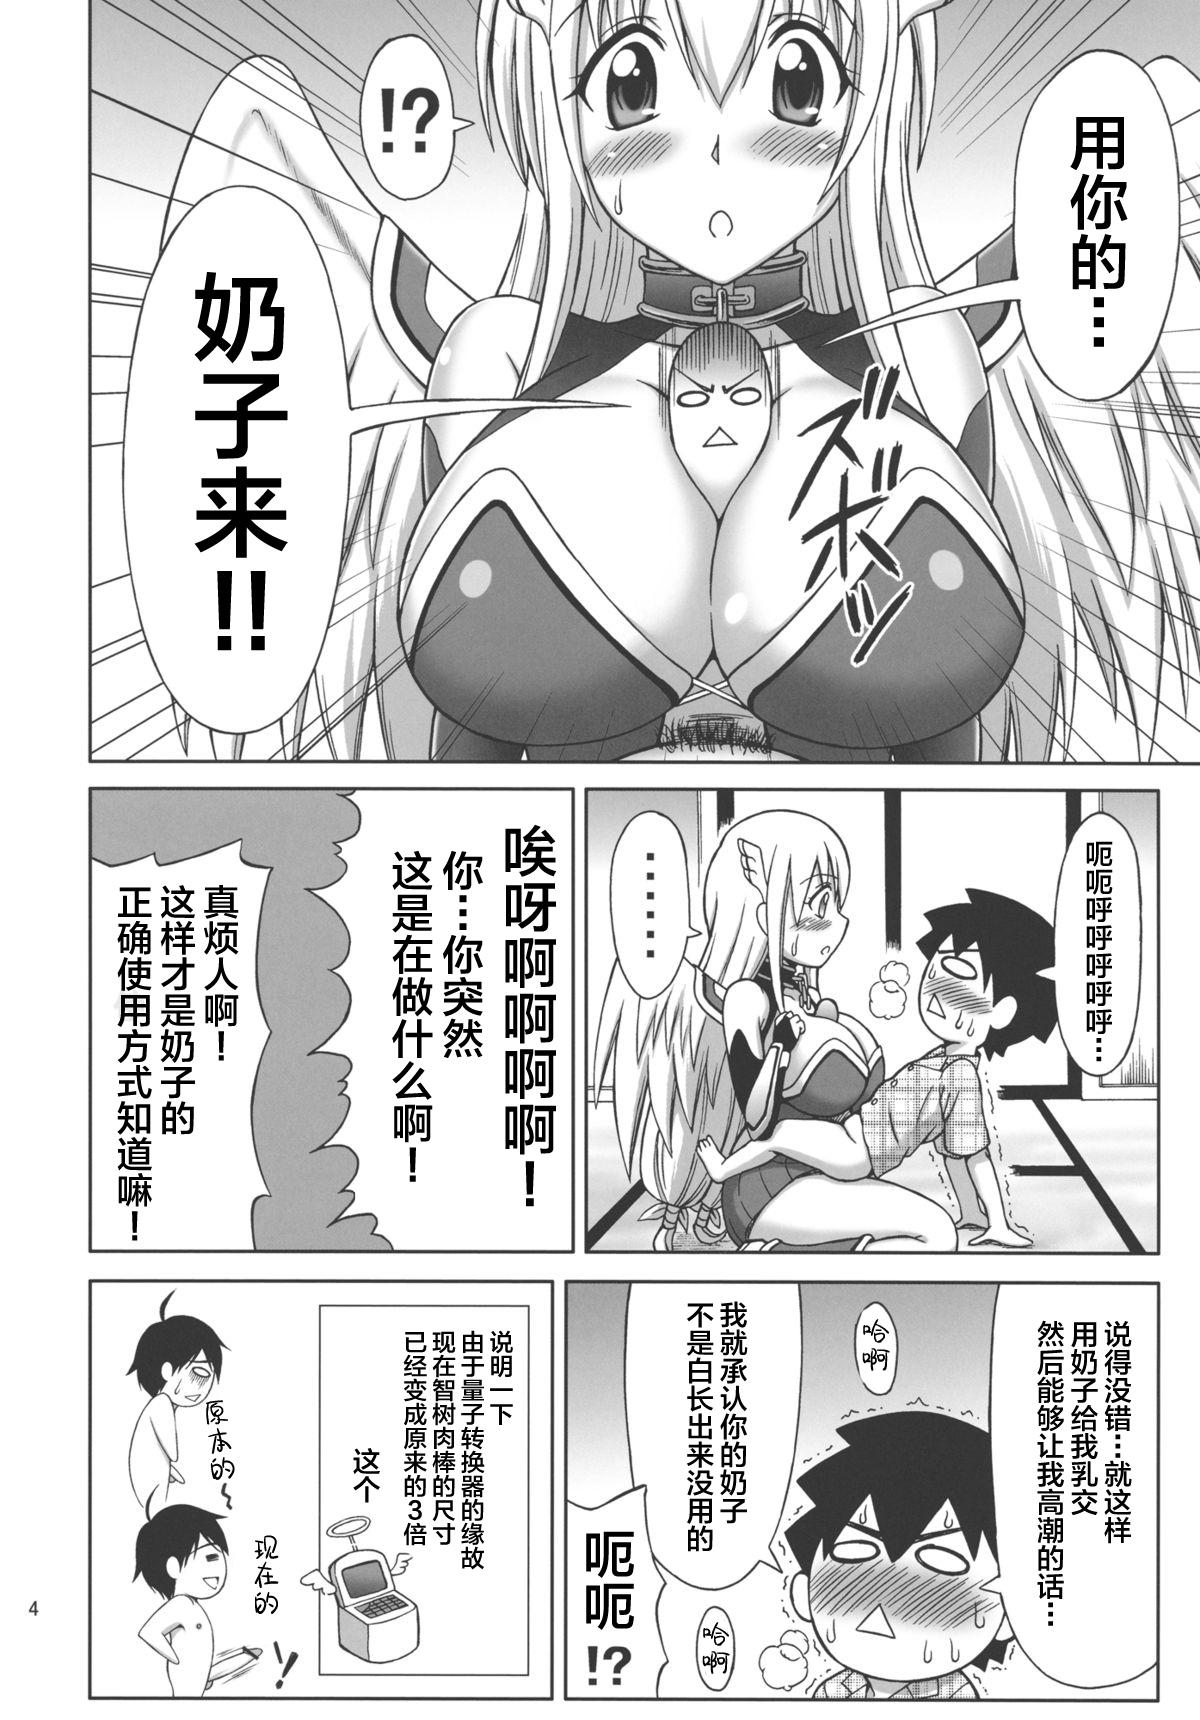 Fucking Mikakunin Seibutsu OO - Sora no otoshimono | heavens lost property Passion - Page 5